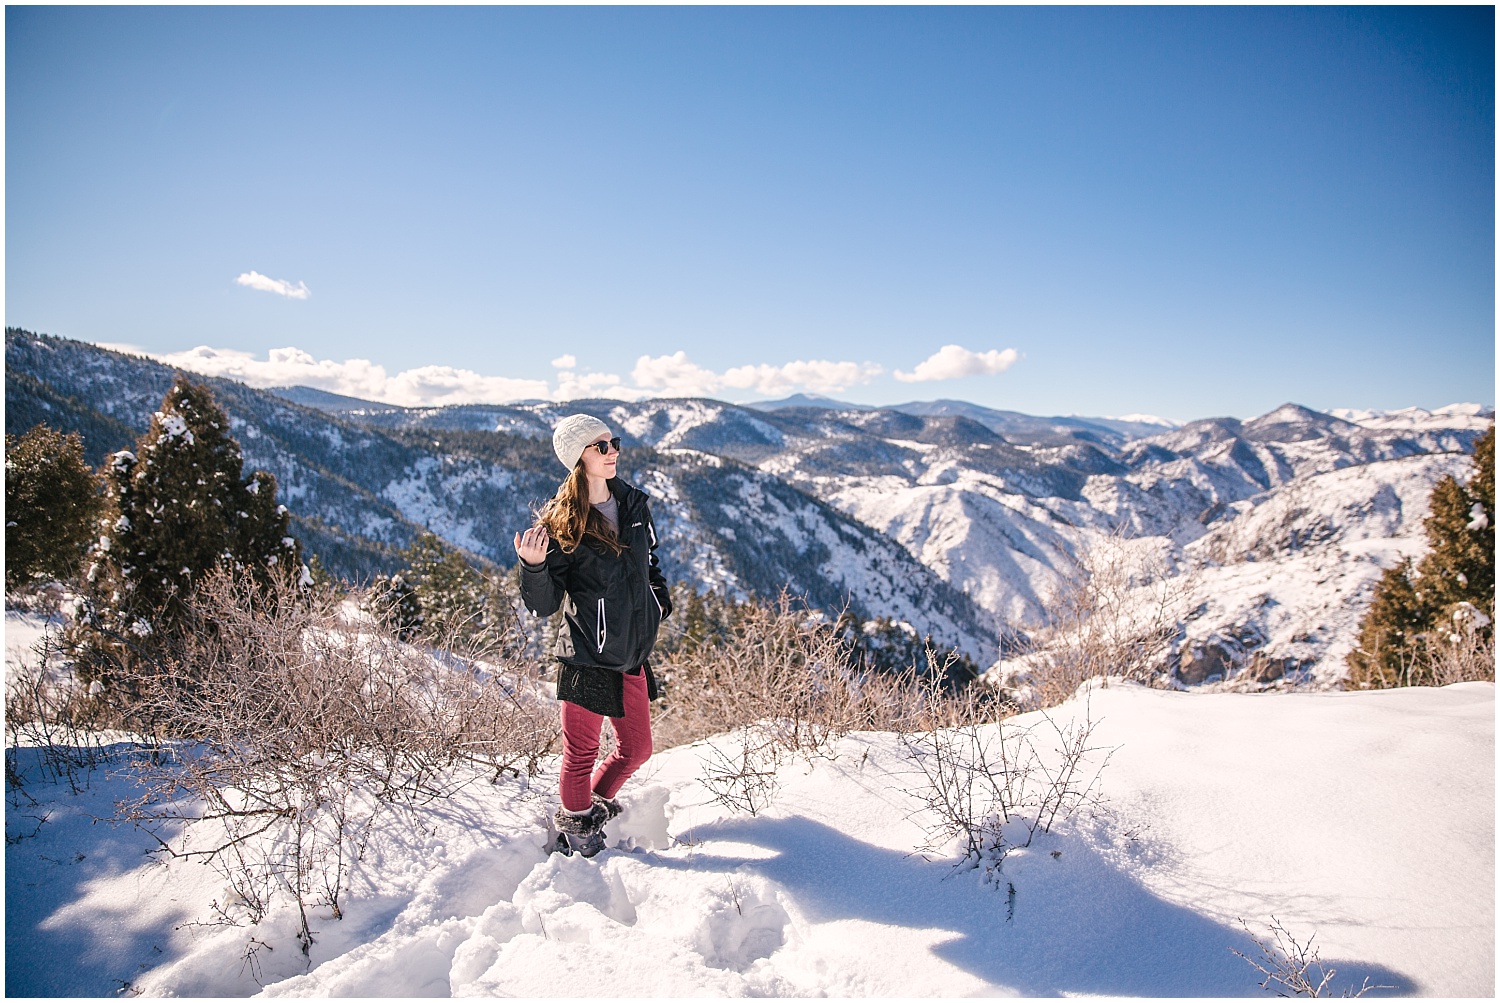 Denver wedding photographer winter adventure photos at Lookout Mountain Colorado